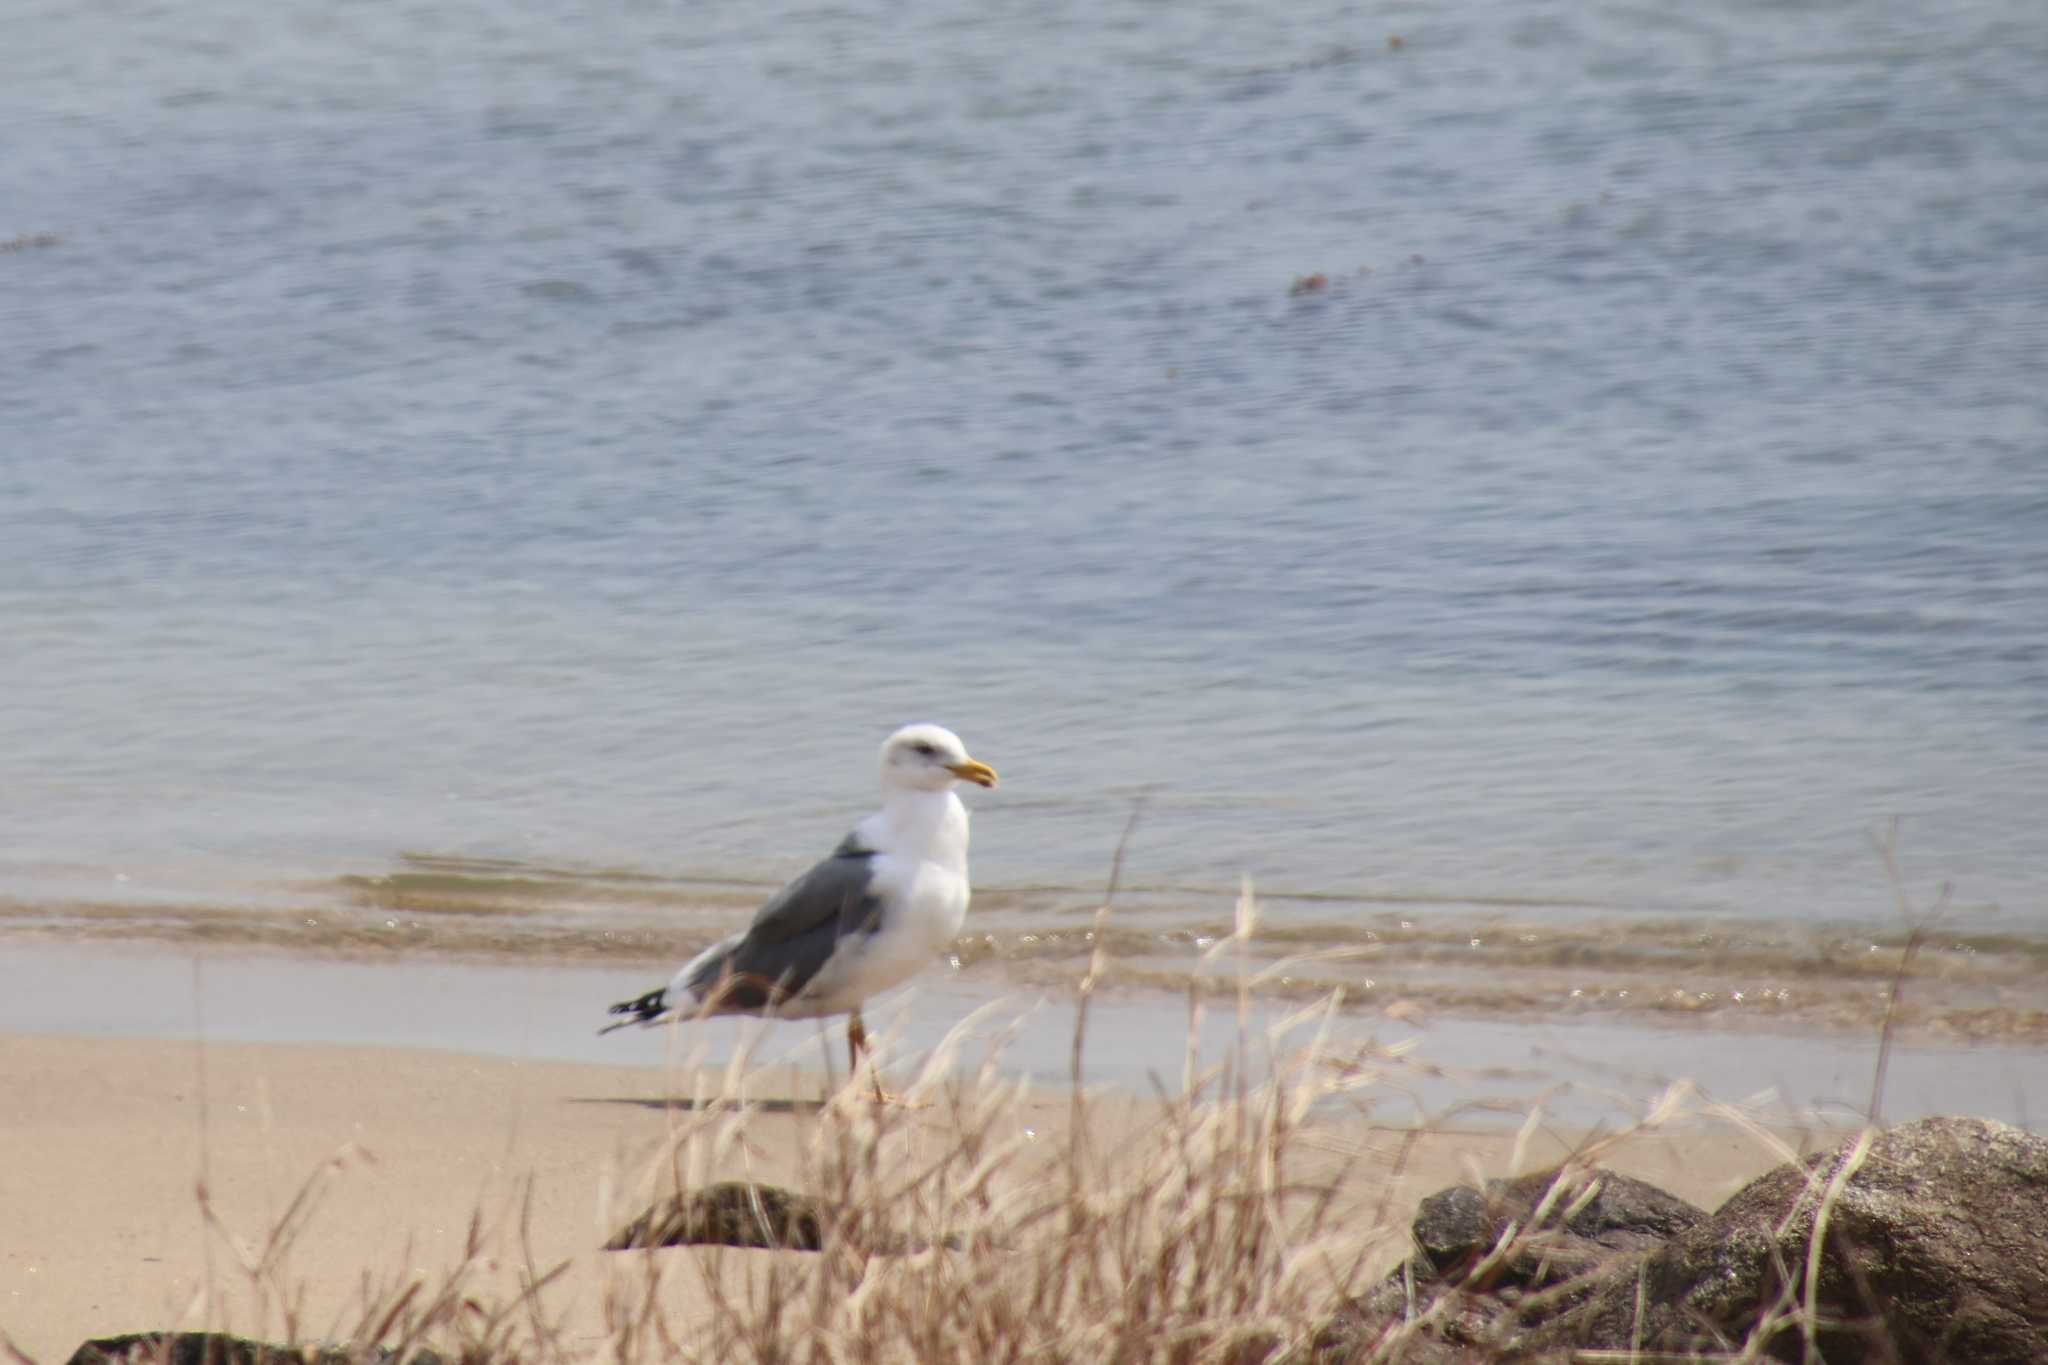 Photo of Slaty-backed Gull at Gonushi Coast by サンダーバード